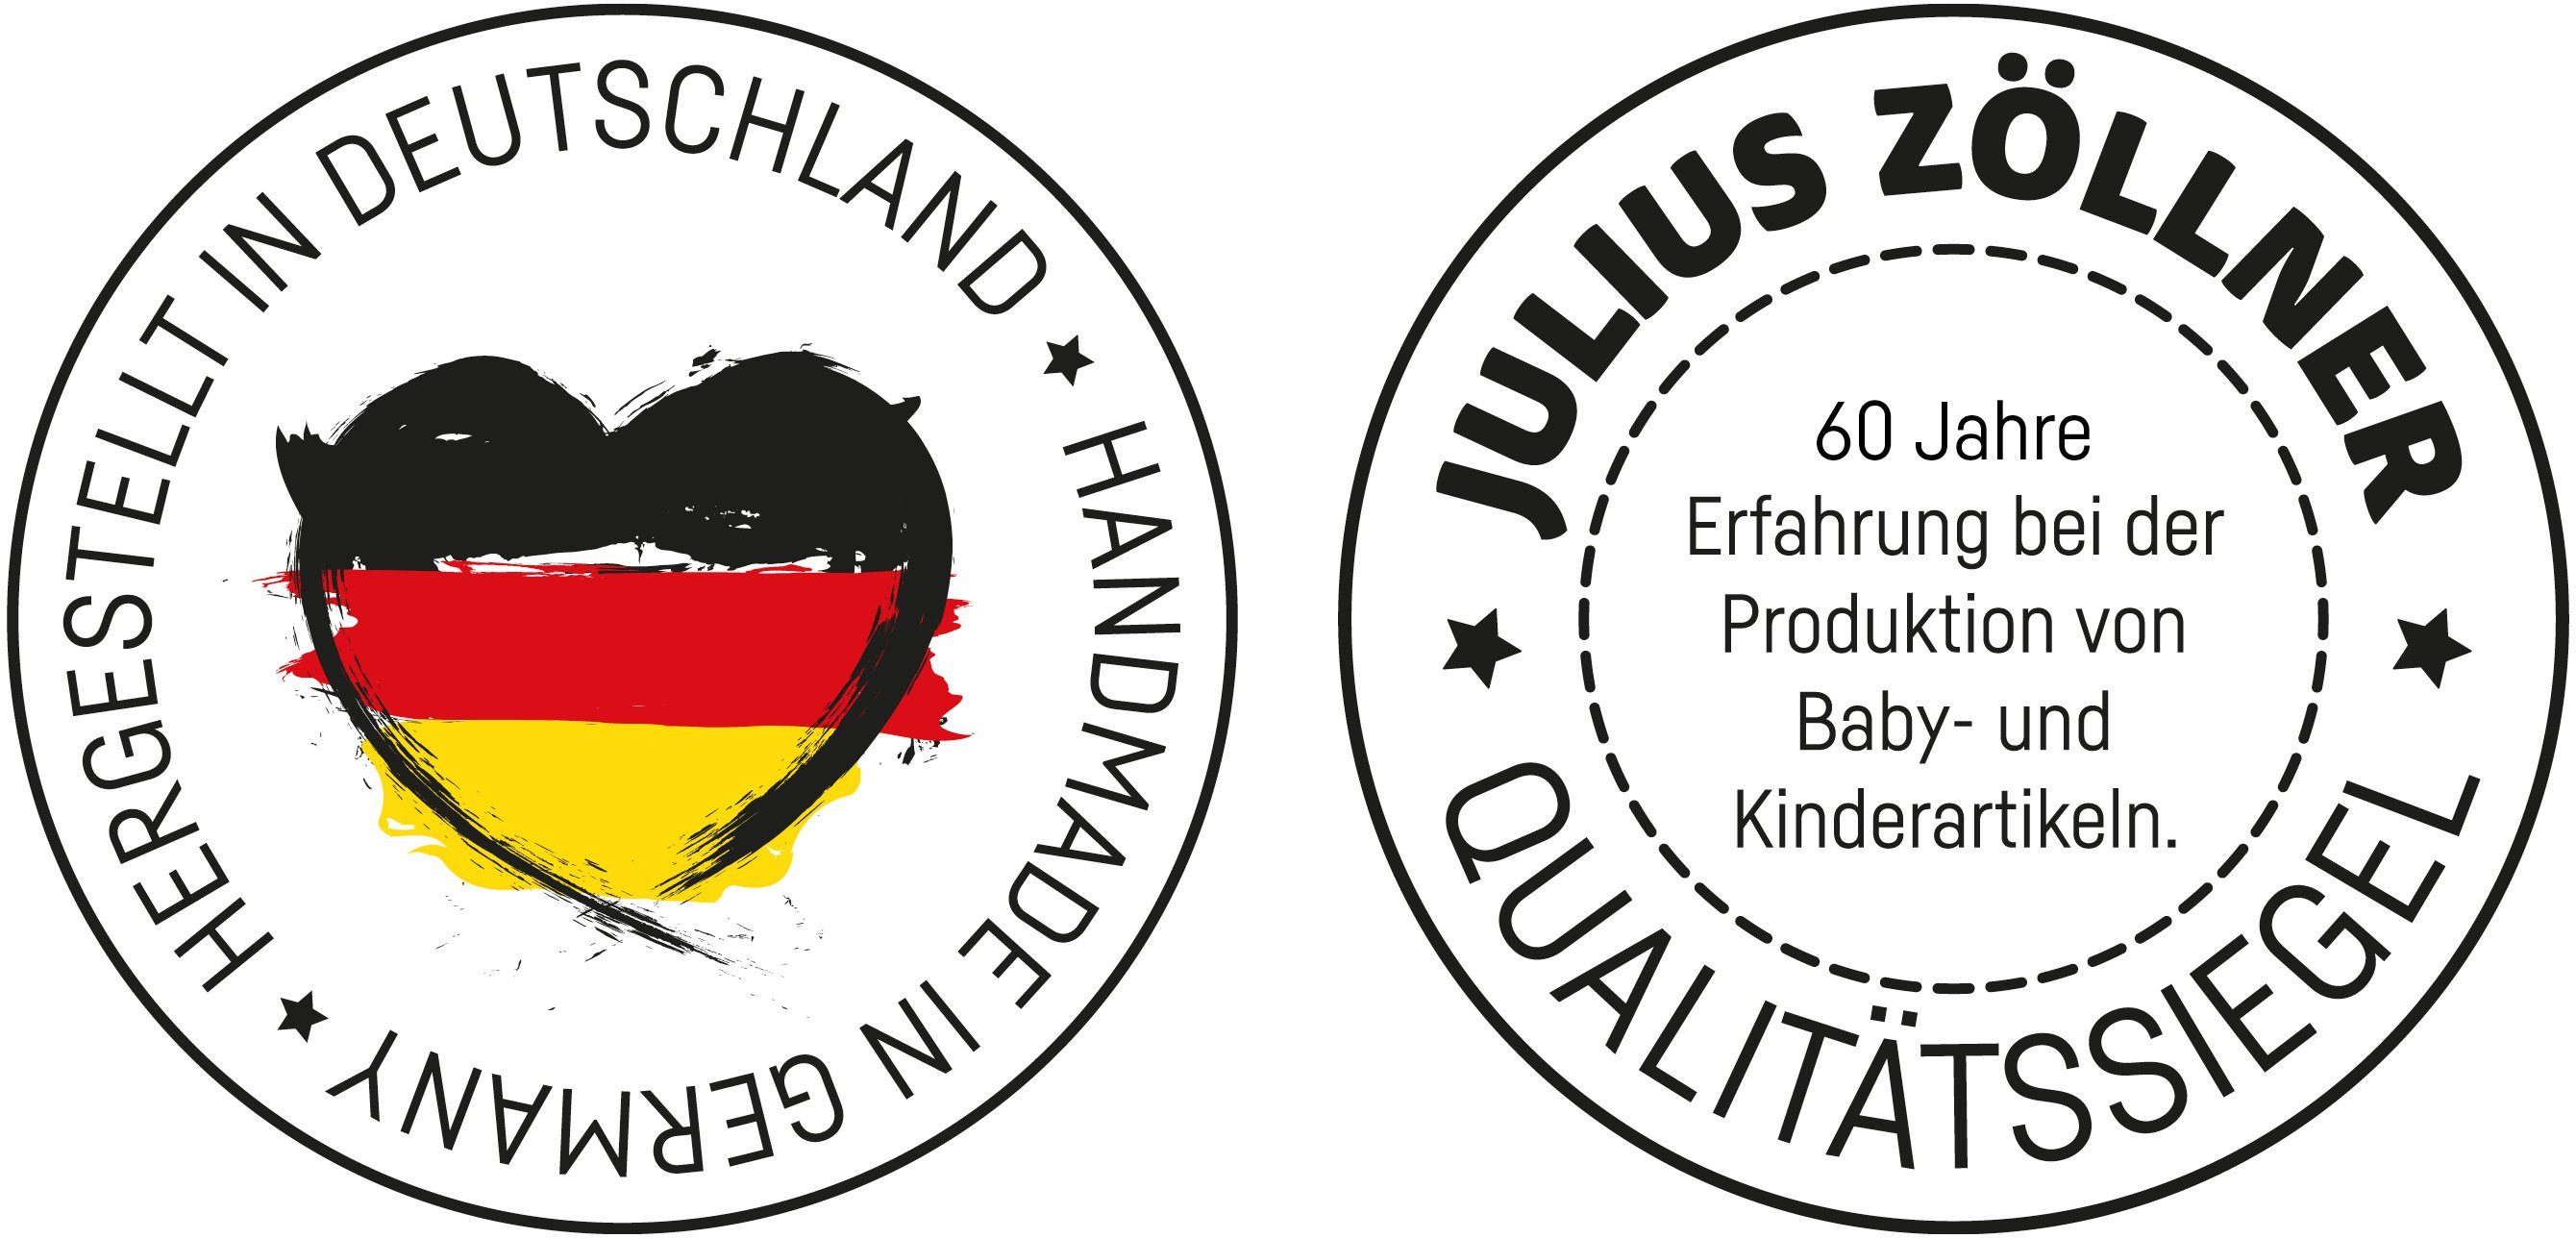 Made in Zöllner Julius Wickelauflage Sealife, Germany 2-Keil,